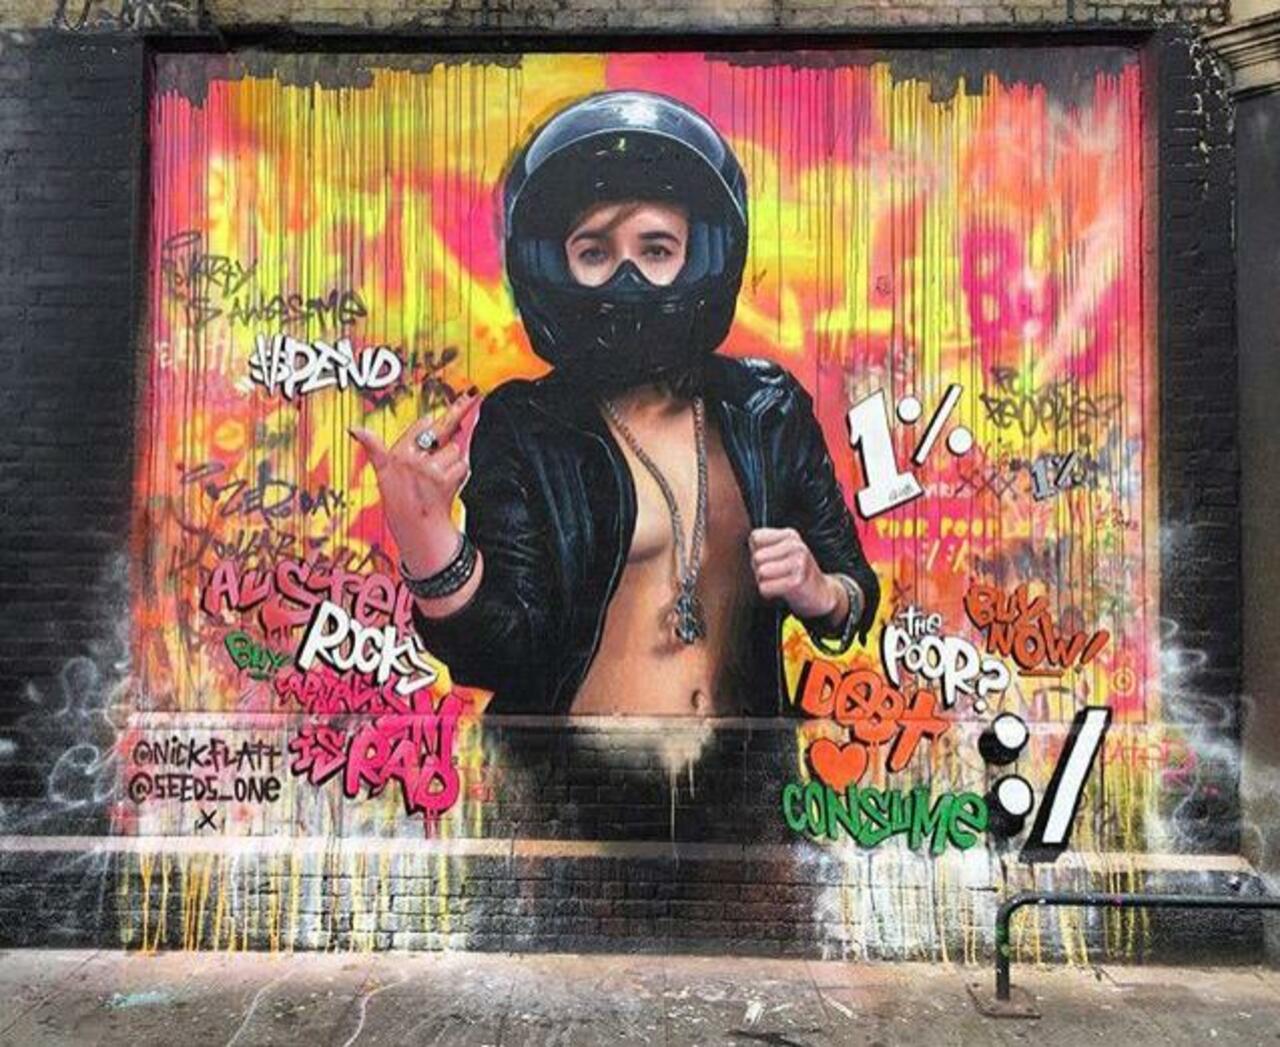 New Street Art collab by Nick Flatt &  Seeds One in London 

#art #graffiti #mural #streetart http://t.co/f4knWrRK5w